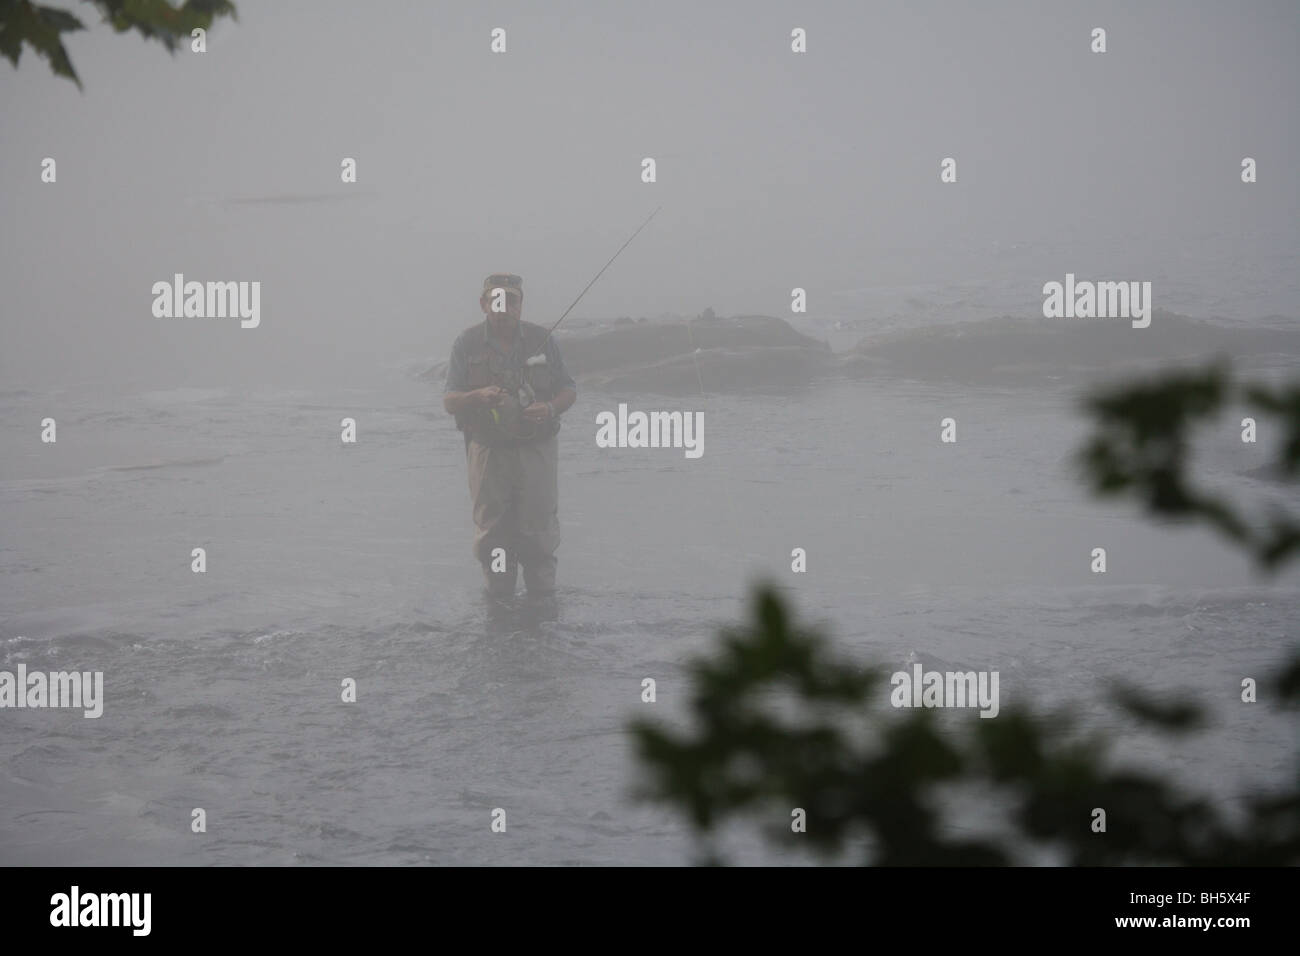 La pêche en rivière LA PÊCHE À LA MOUCHE MOUCHE transportant un épais brouillard MAUVAIS TEMPS Banque D'Images